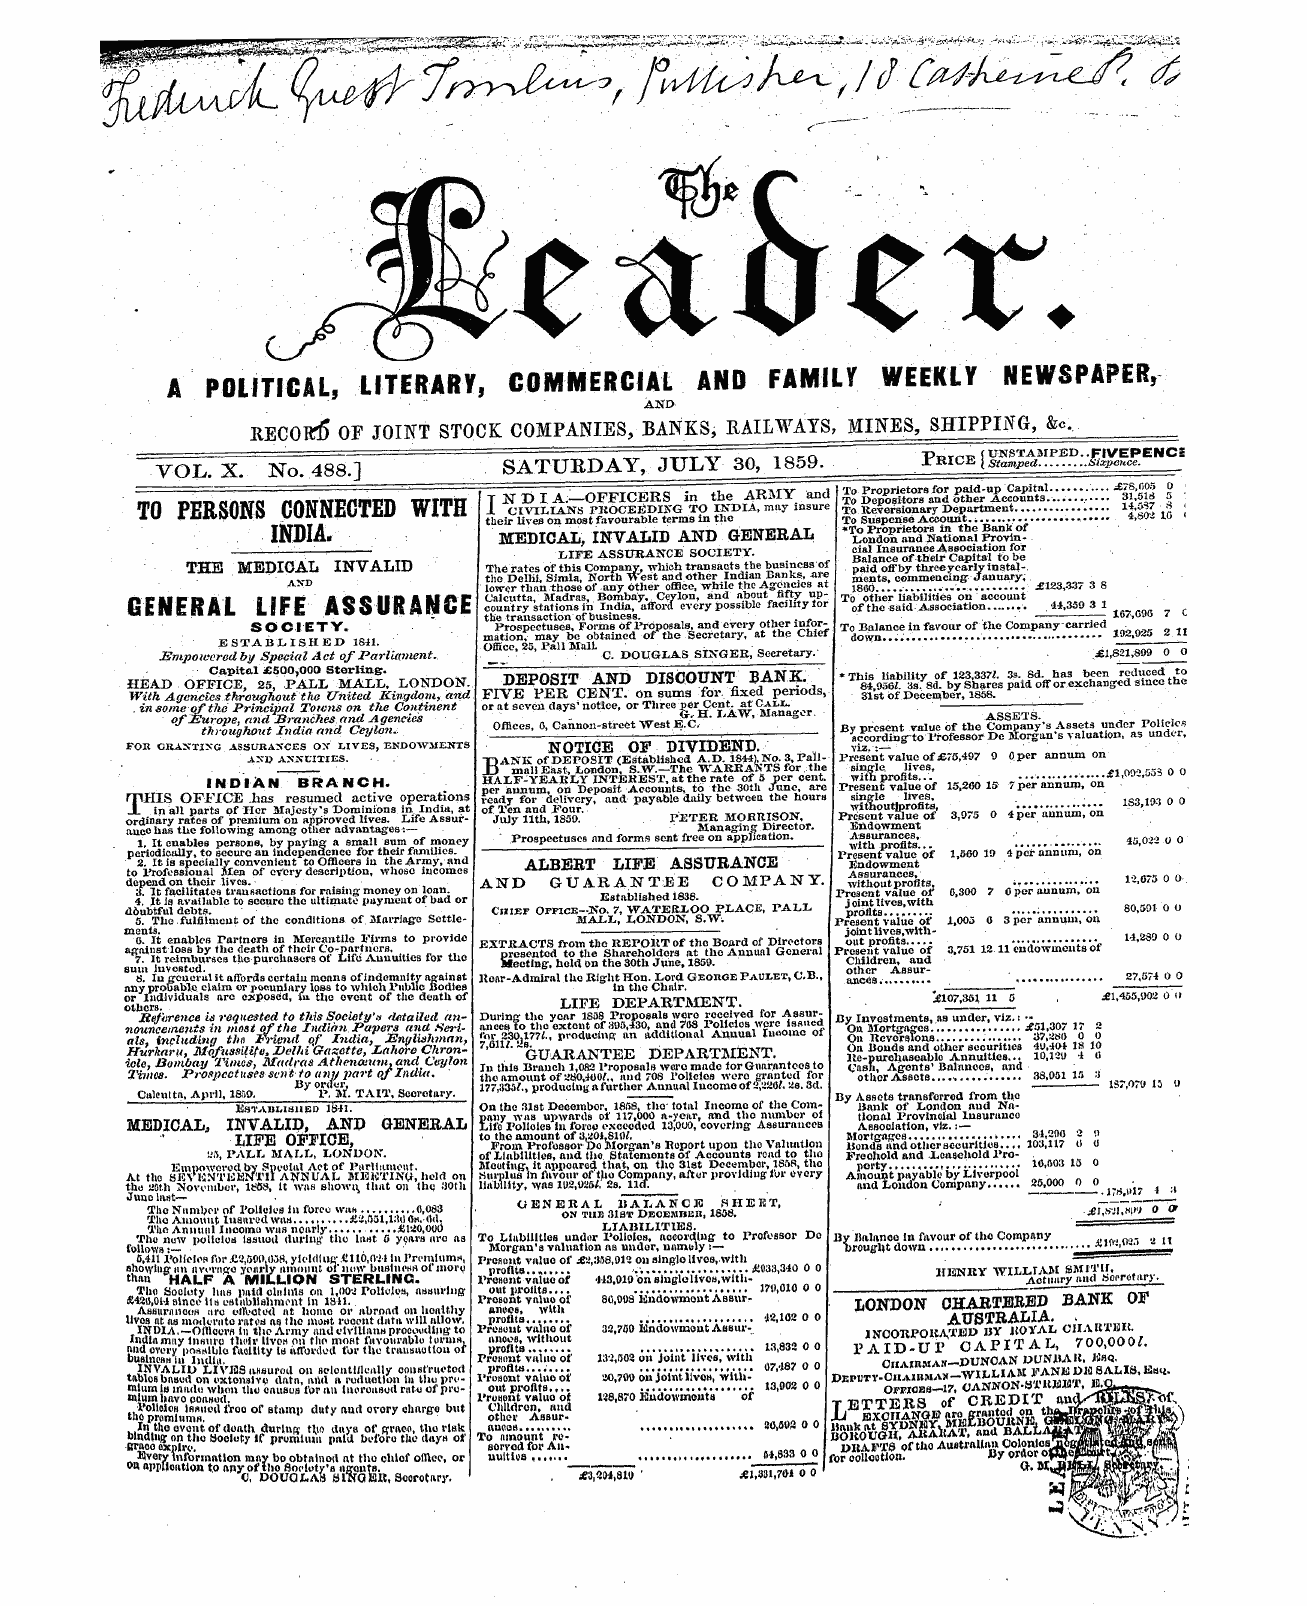 Leader (1850-1860): jS F Y, 2nd edition - Yol.X No. 488.] Saturday, July 30, 1859....